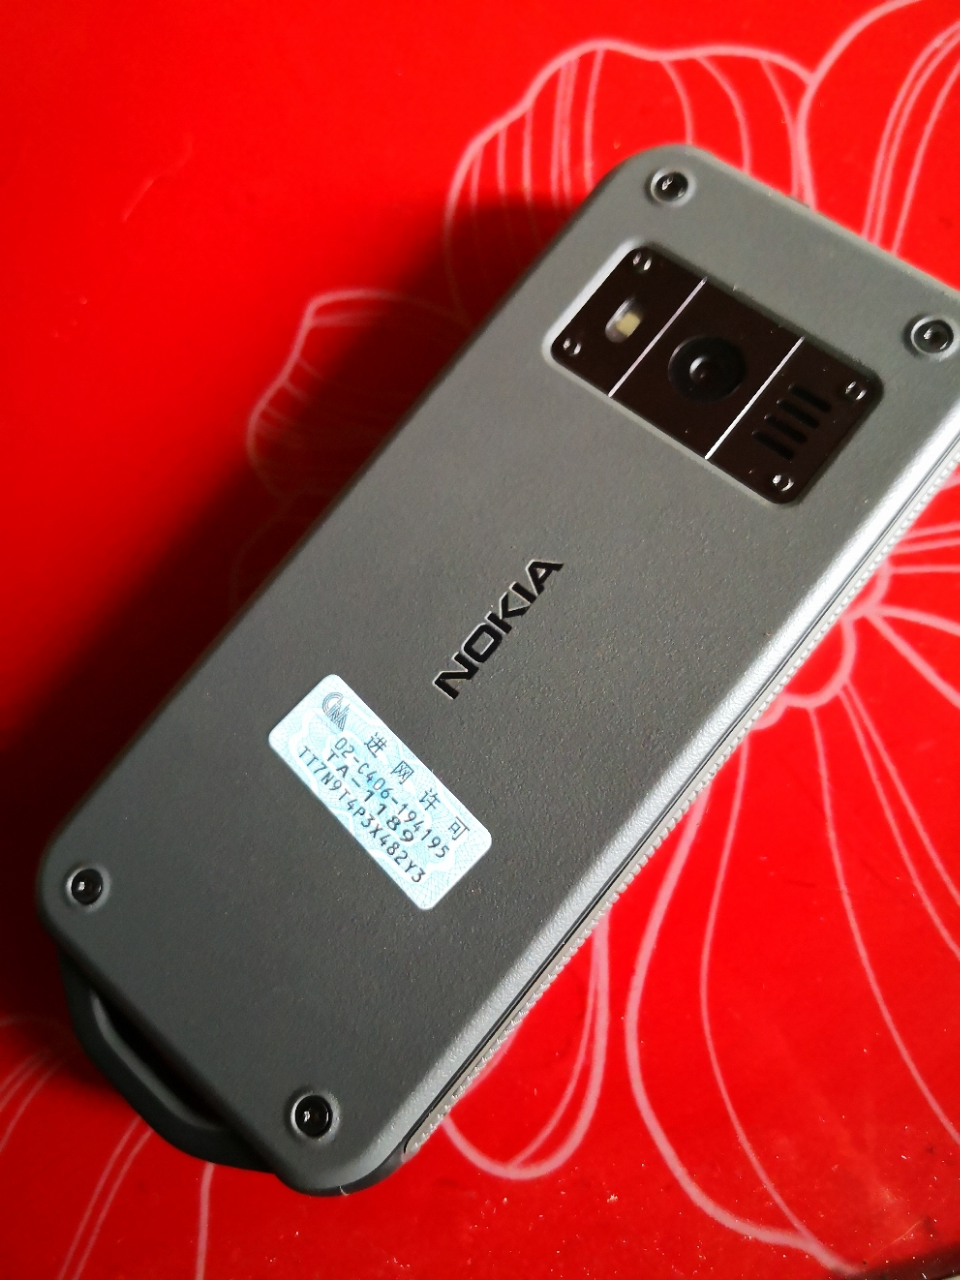 诺基亚(nokia)诺基亚800 黑色 移动联通电信 全网通4g三防手机 双卡双